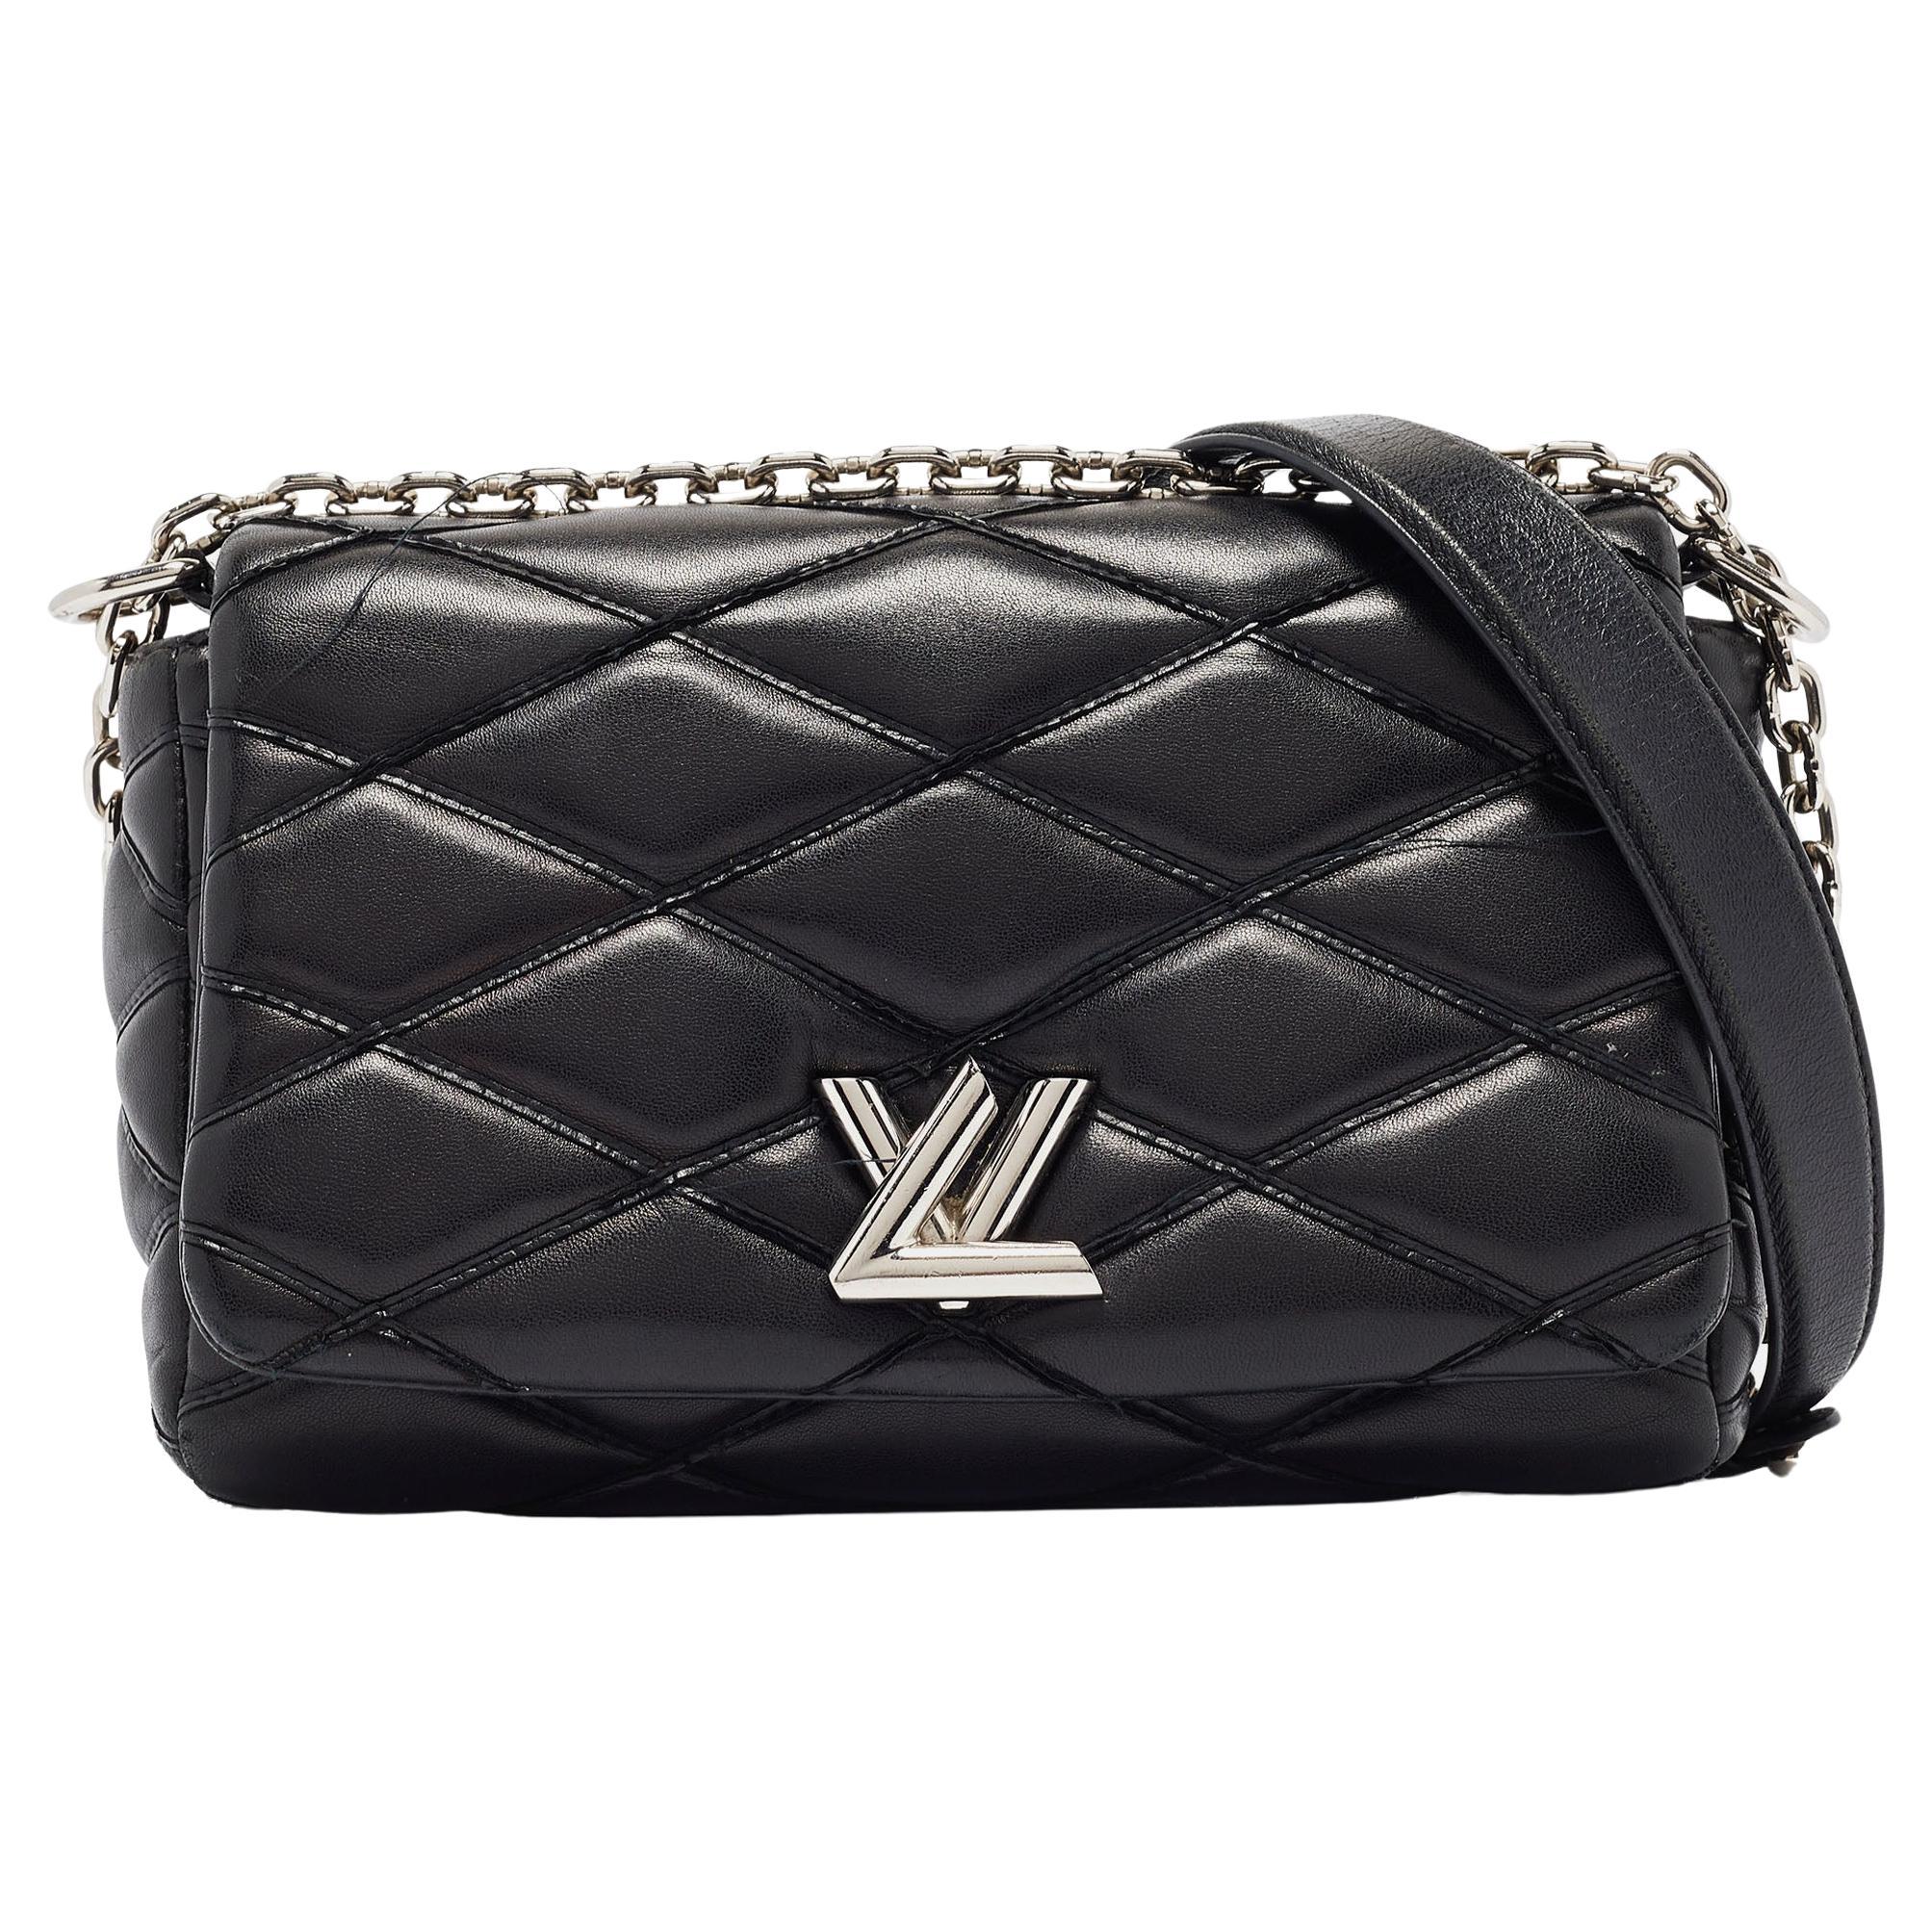 Louis Vuitton Black Malletage Leather GO-14 PM Bag For Sale